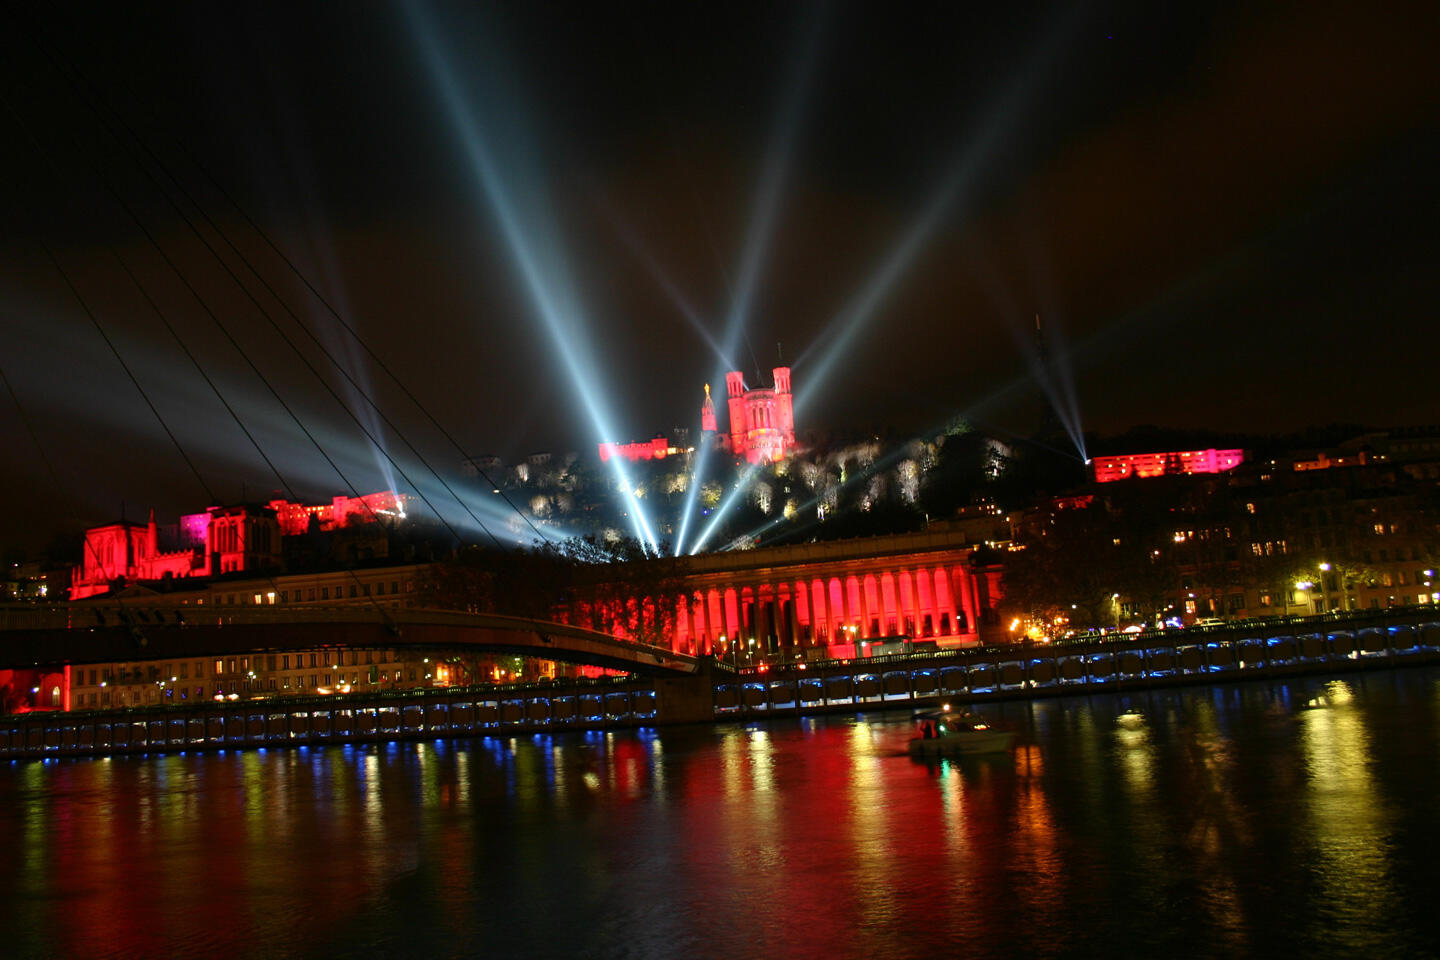 Vue nocturne de Lyon avec les illuminations rouges de la Basilique de Fourvière et du Palais de justice historique, des faisceaux lumineux traversant le ciel au-dessus du pont, et les reflets des lumières sur la Saône lors de la Fête des Lumières.